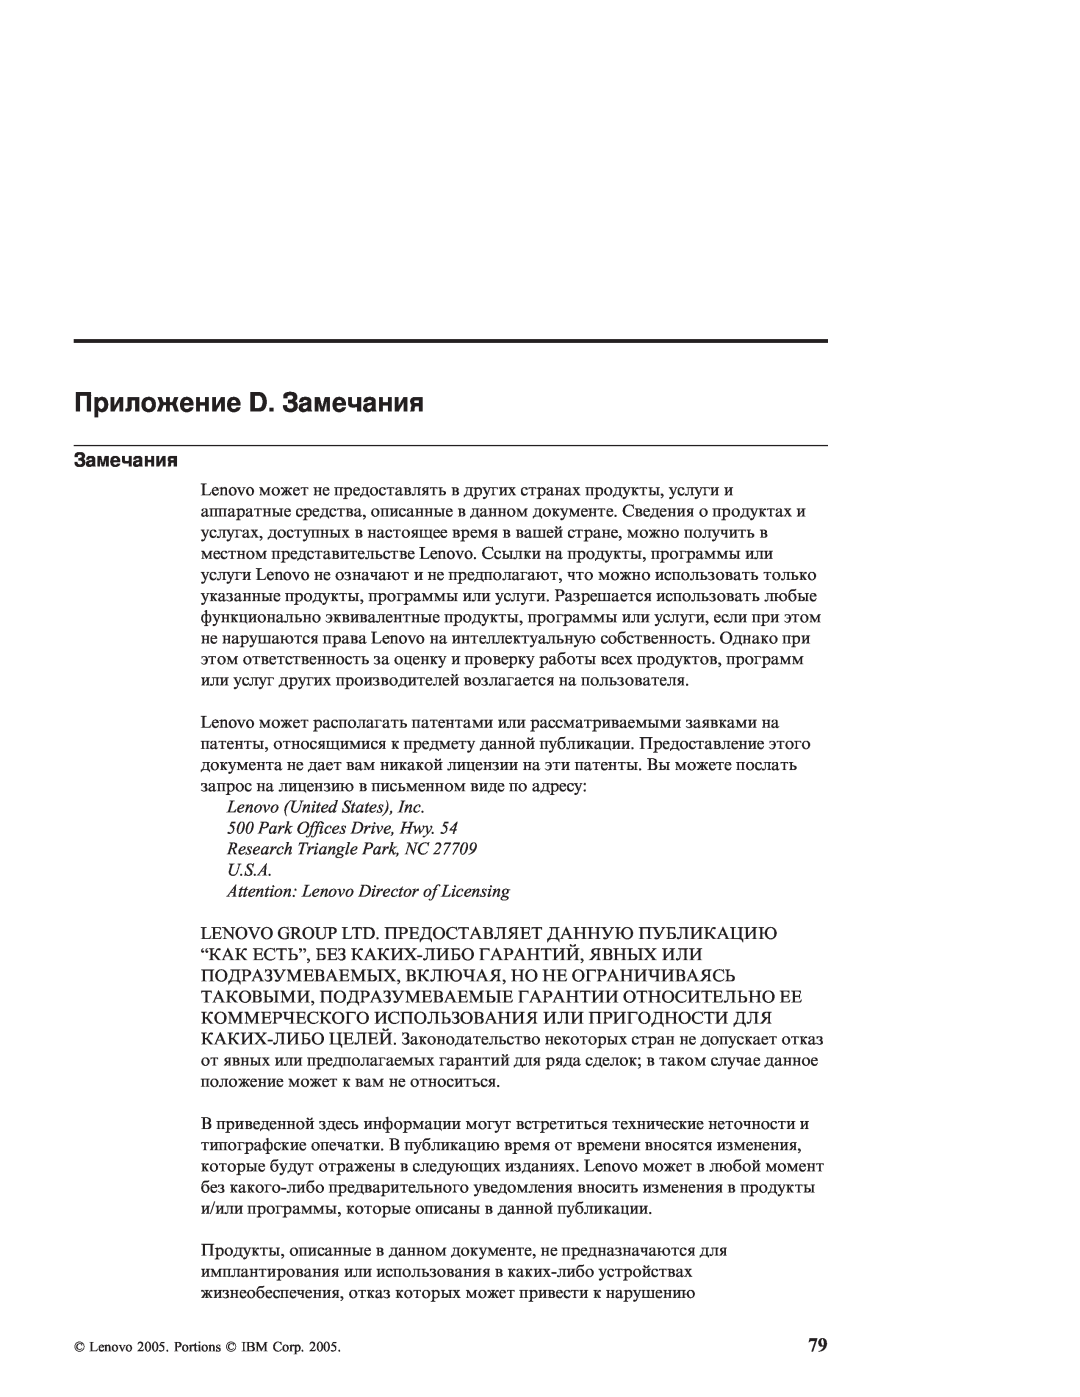 IBM R51E manual Приложение D. Замечания 